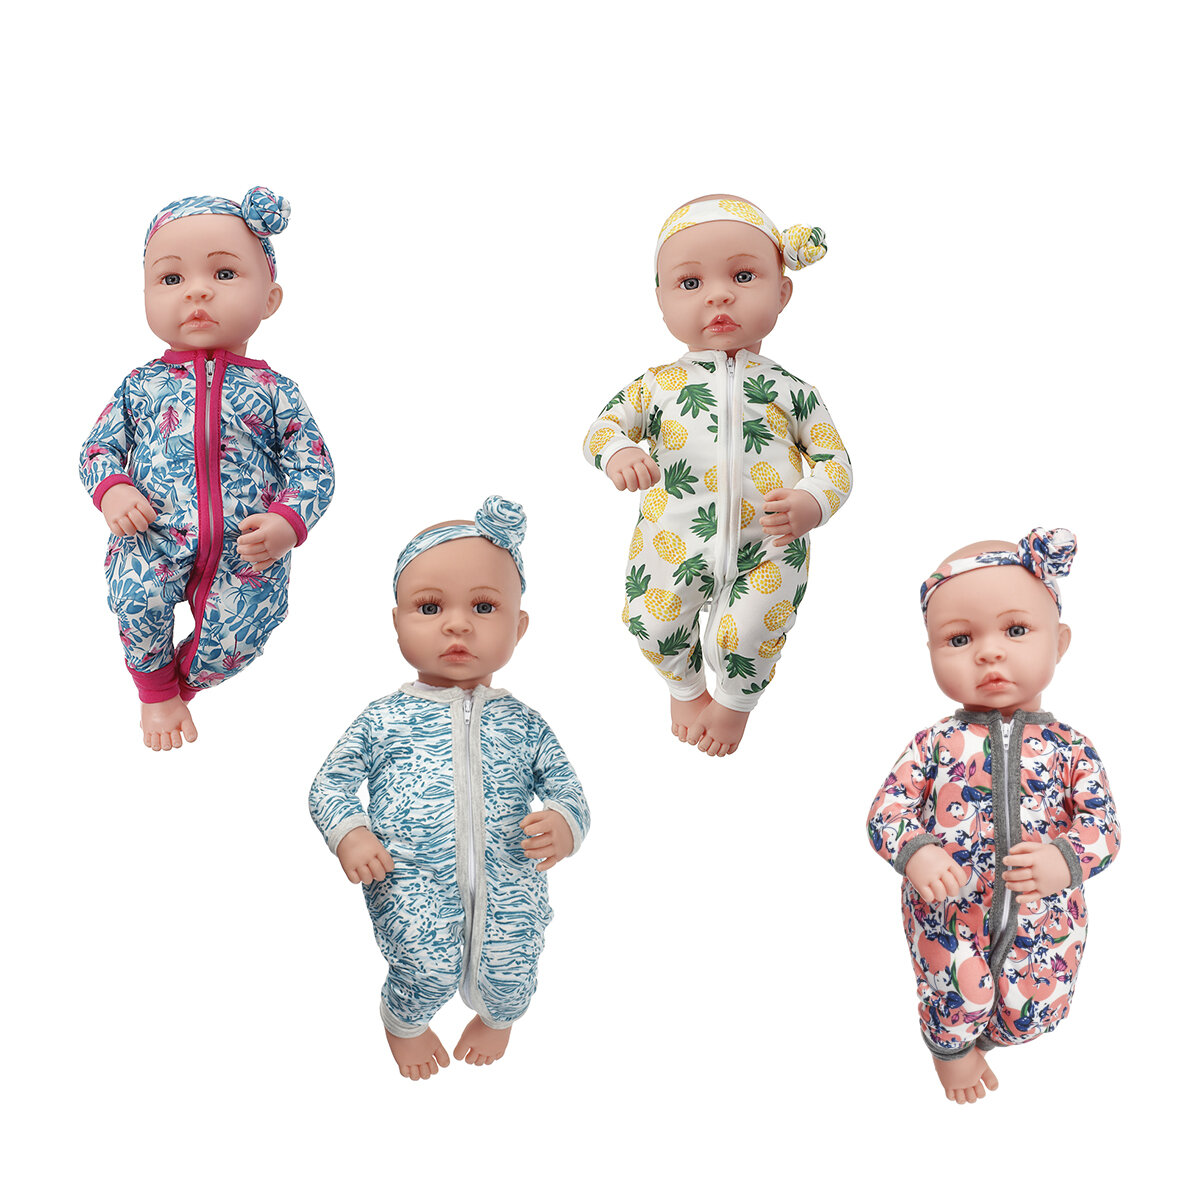 45cm Soft Silicona muñecas de vinilo realista hecho a mano bebé recién nacido para niños regalo de cumpleaños juguetes p